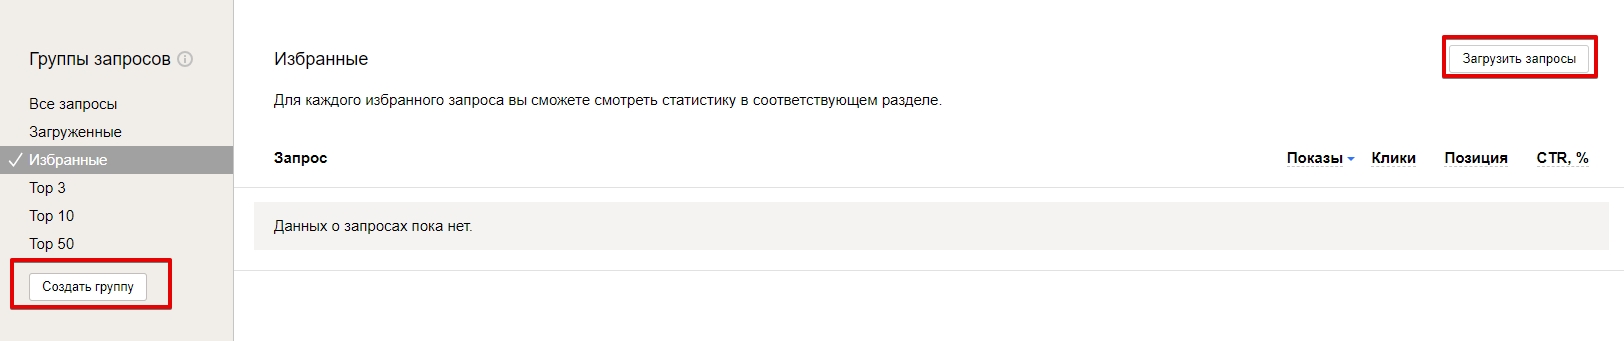 Раздел “Запросы и группы” Яндекс.Вебмастер